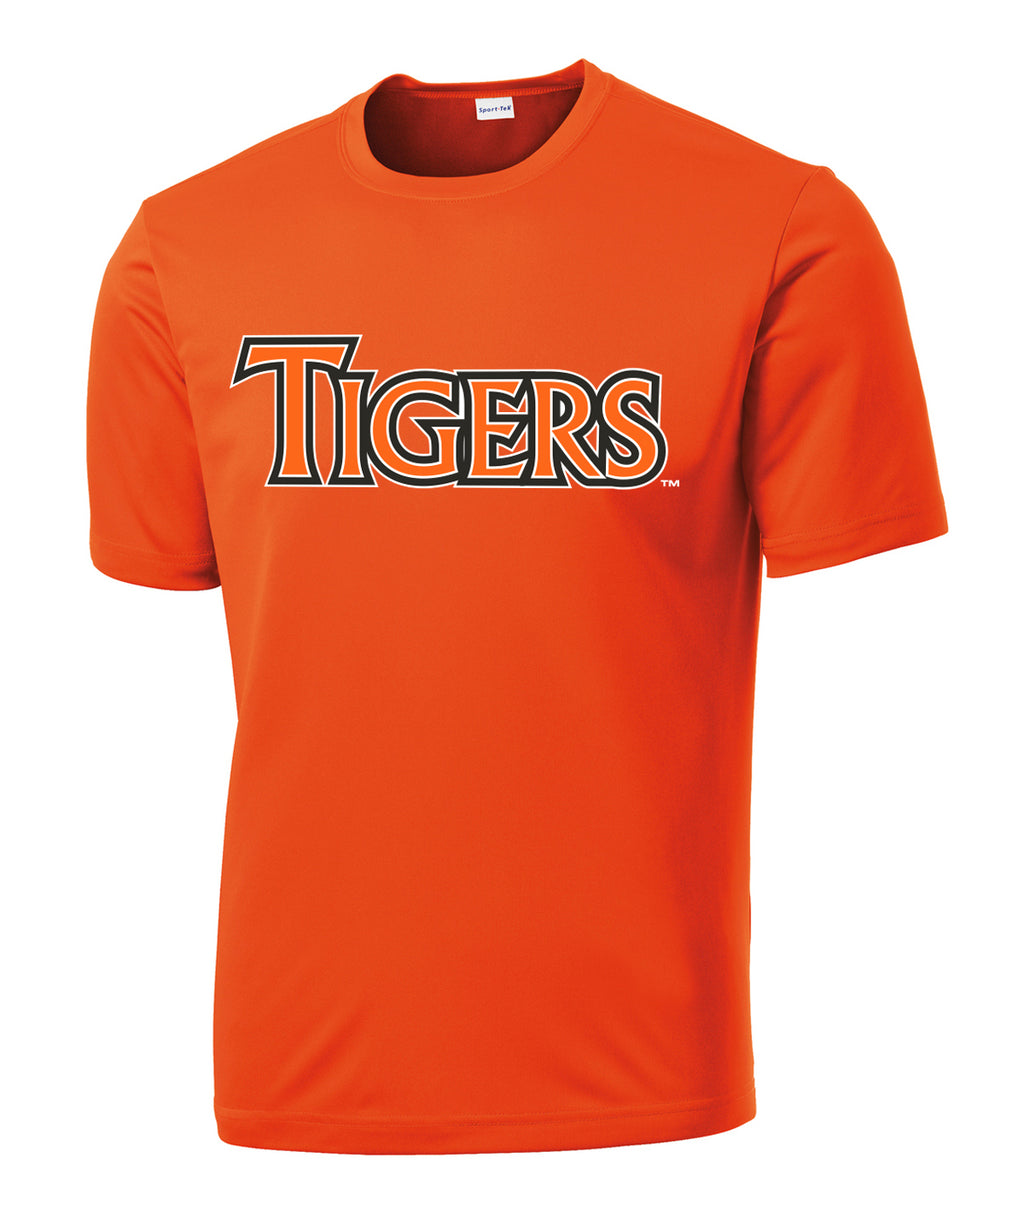 Tigers Shirt Tiger Tshirt Tiger Pride Tee Retro School 